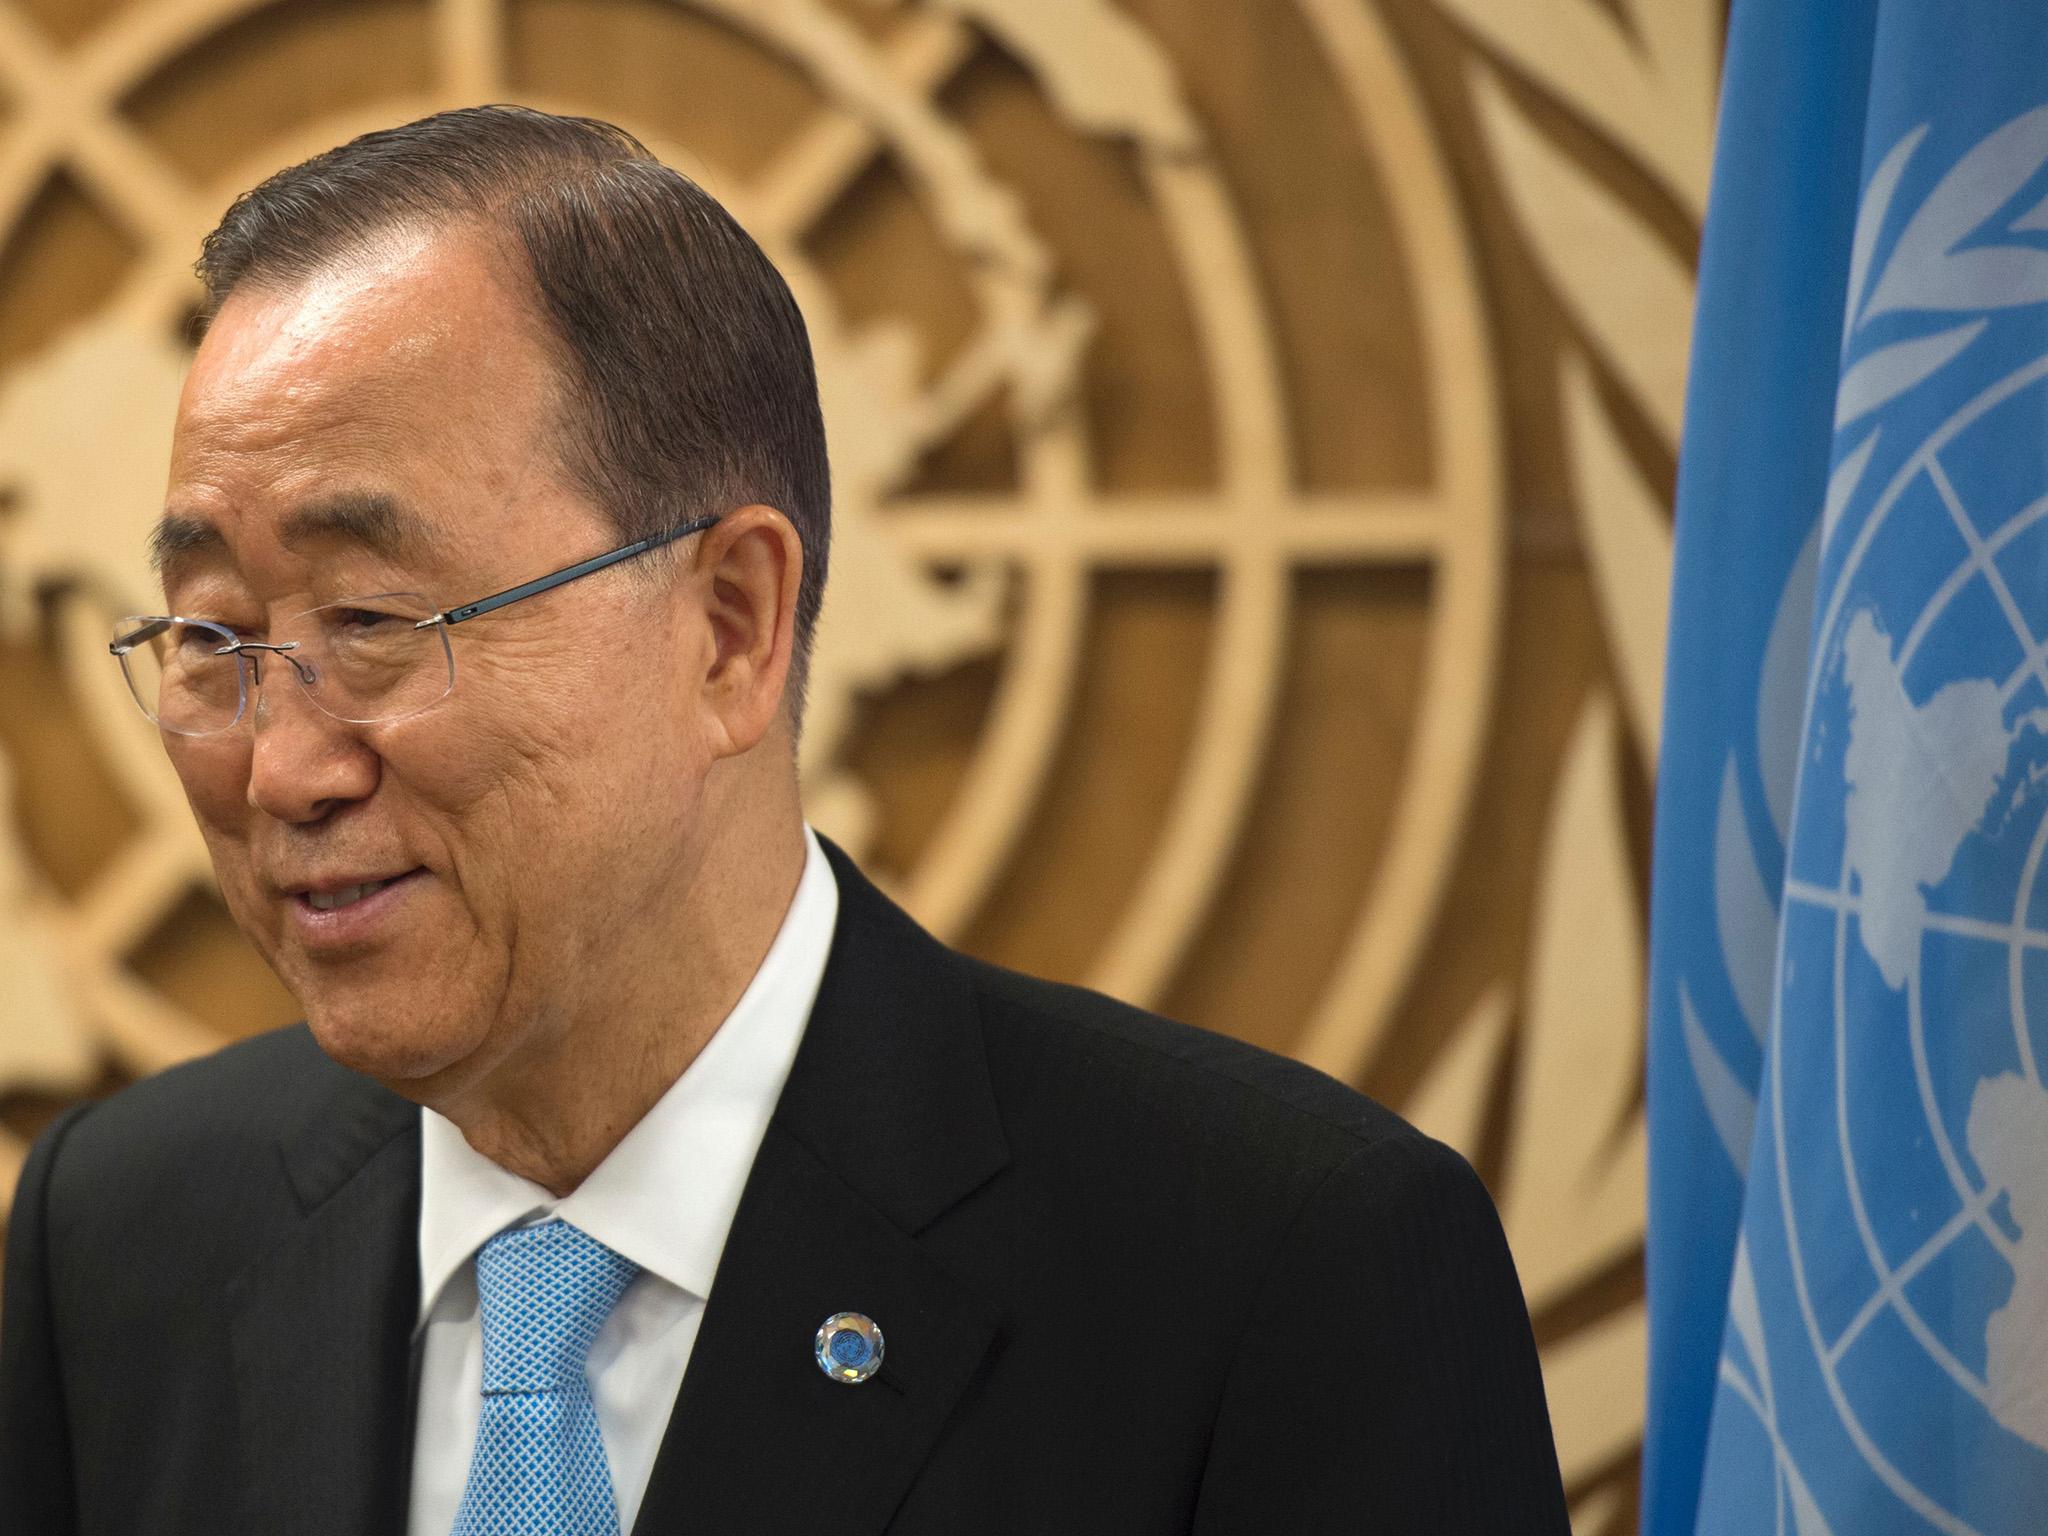 United Nations Secretary General Ban Ki-moon looks on during the United Nations General Assembly General Debate